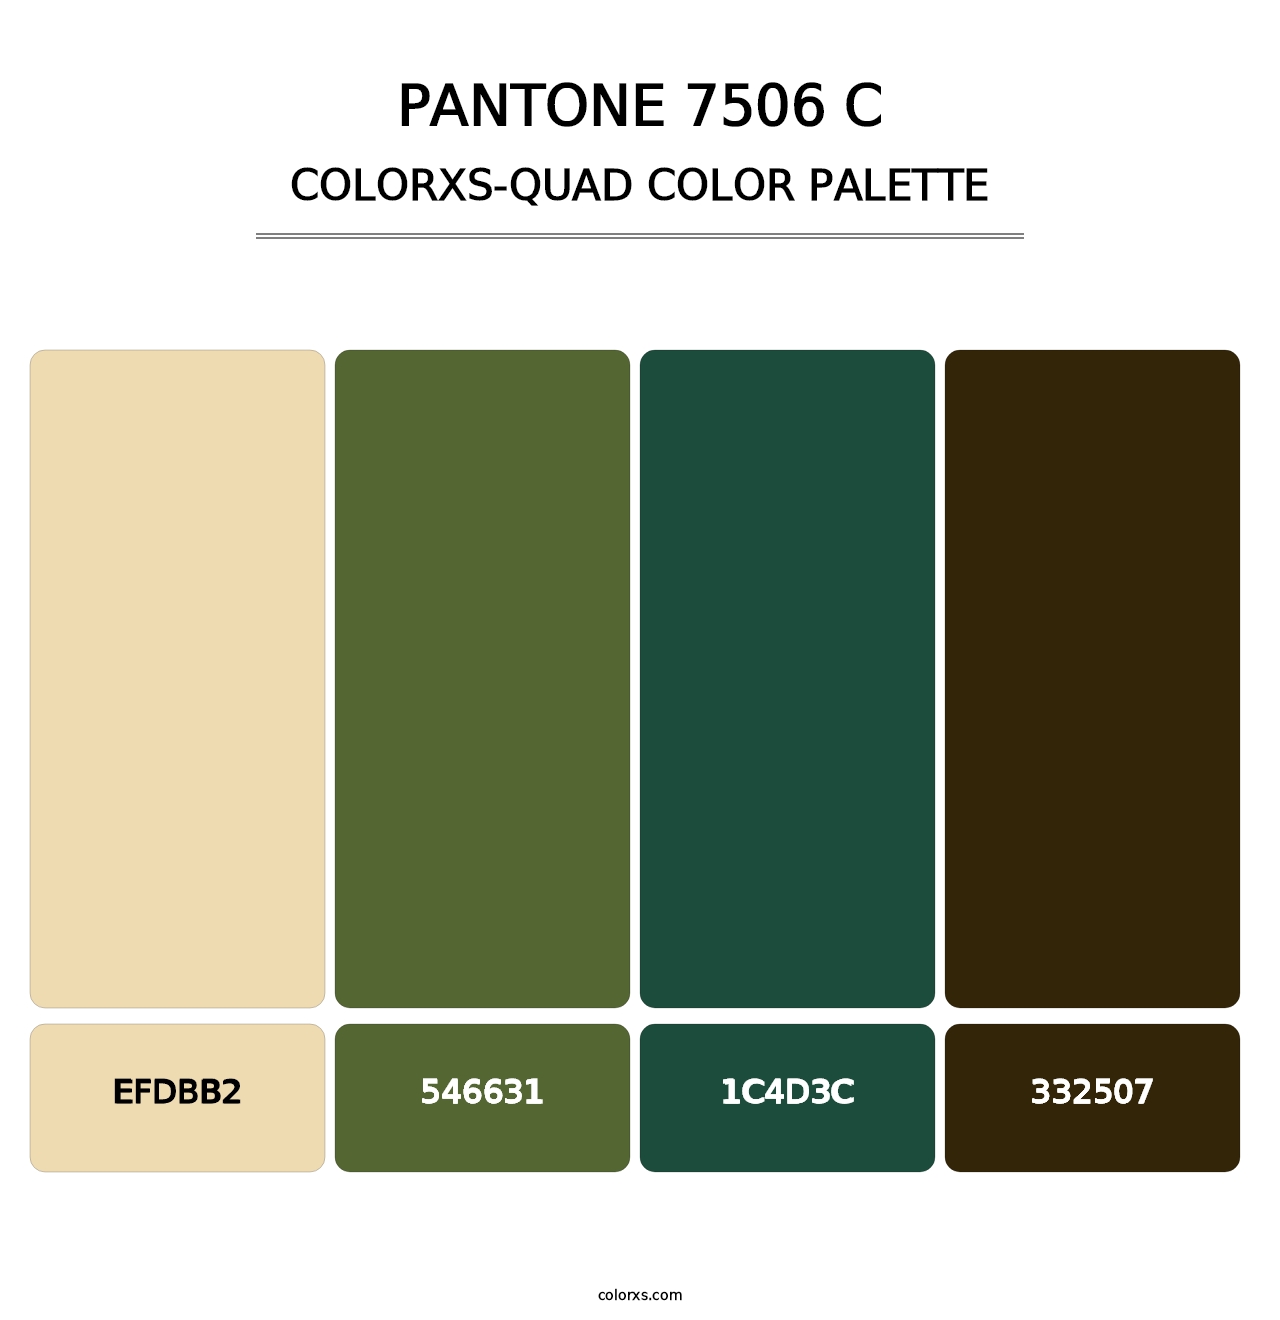 PANTONE 7506 C - Colorxs Quad Palette